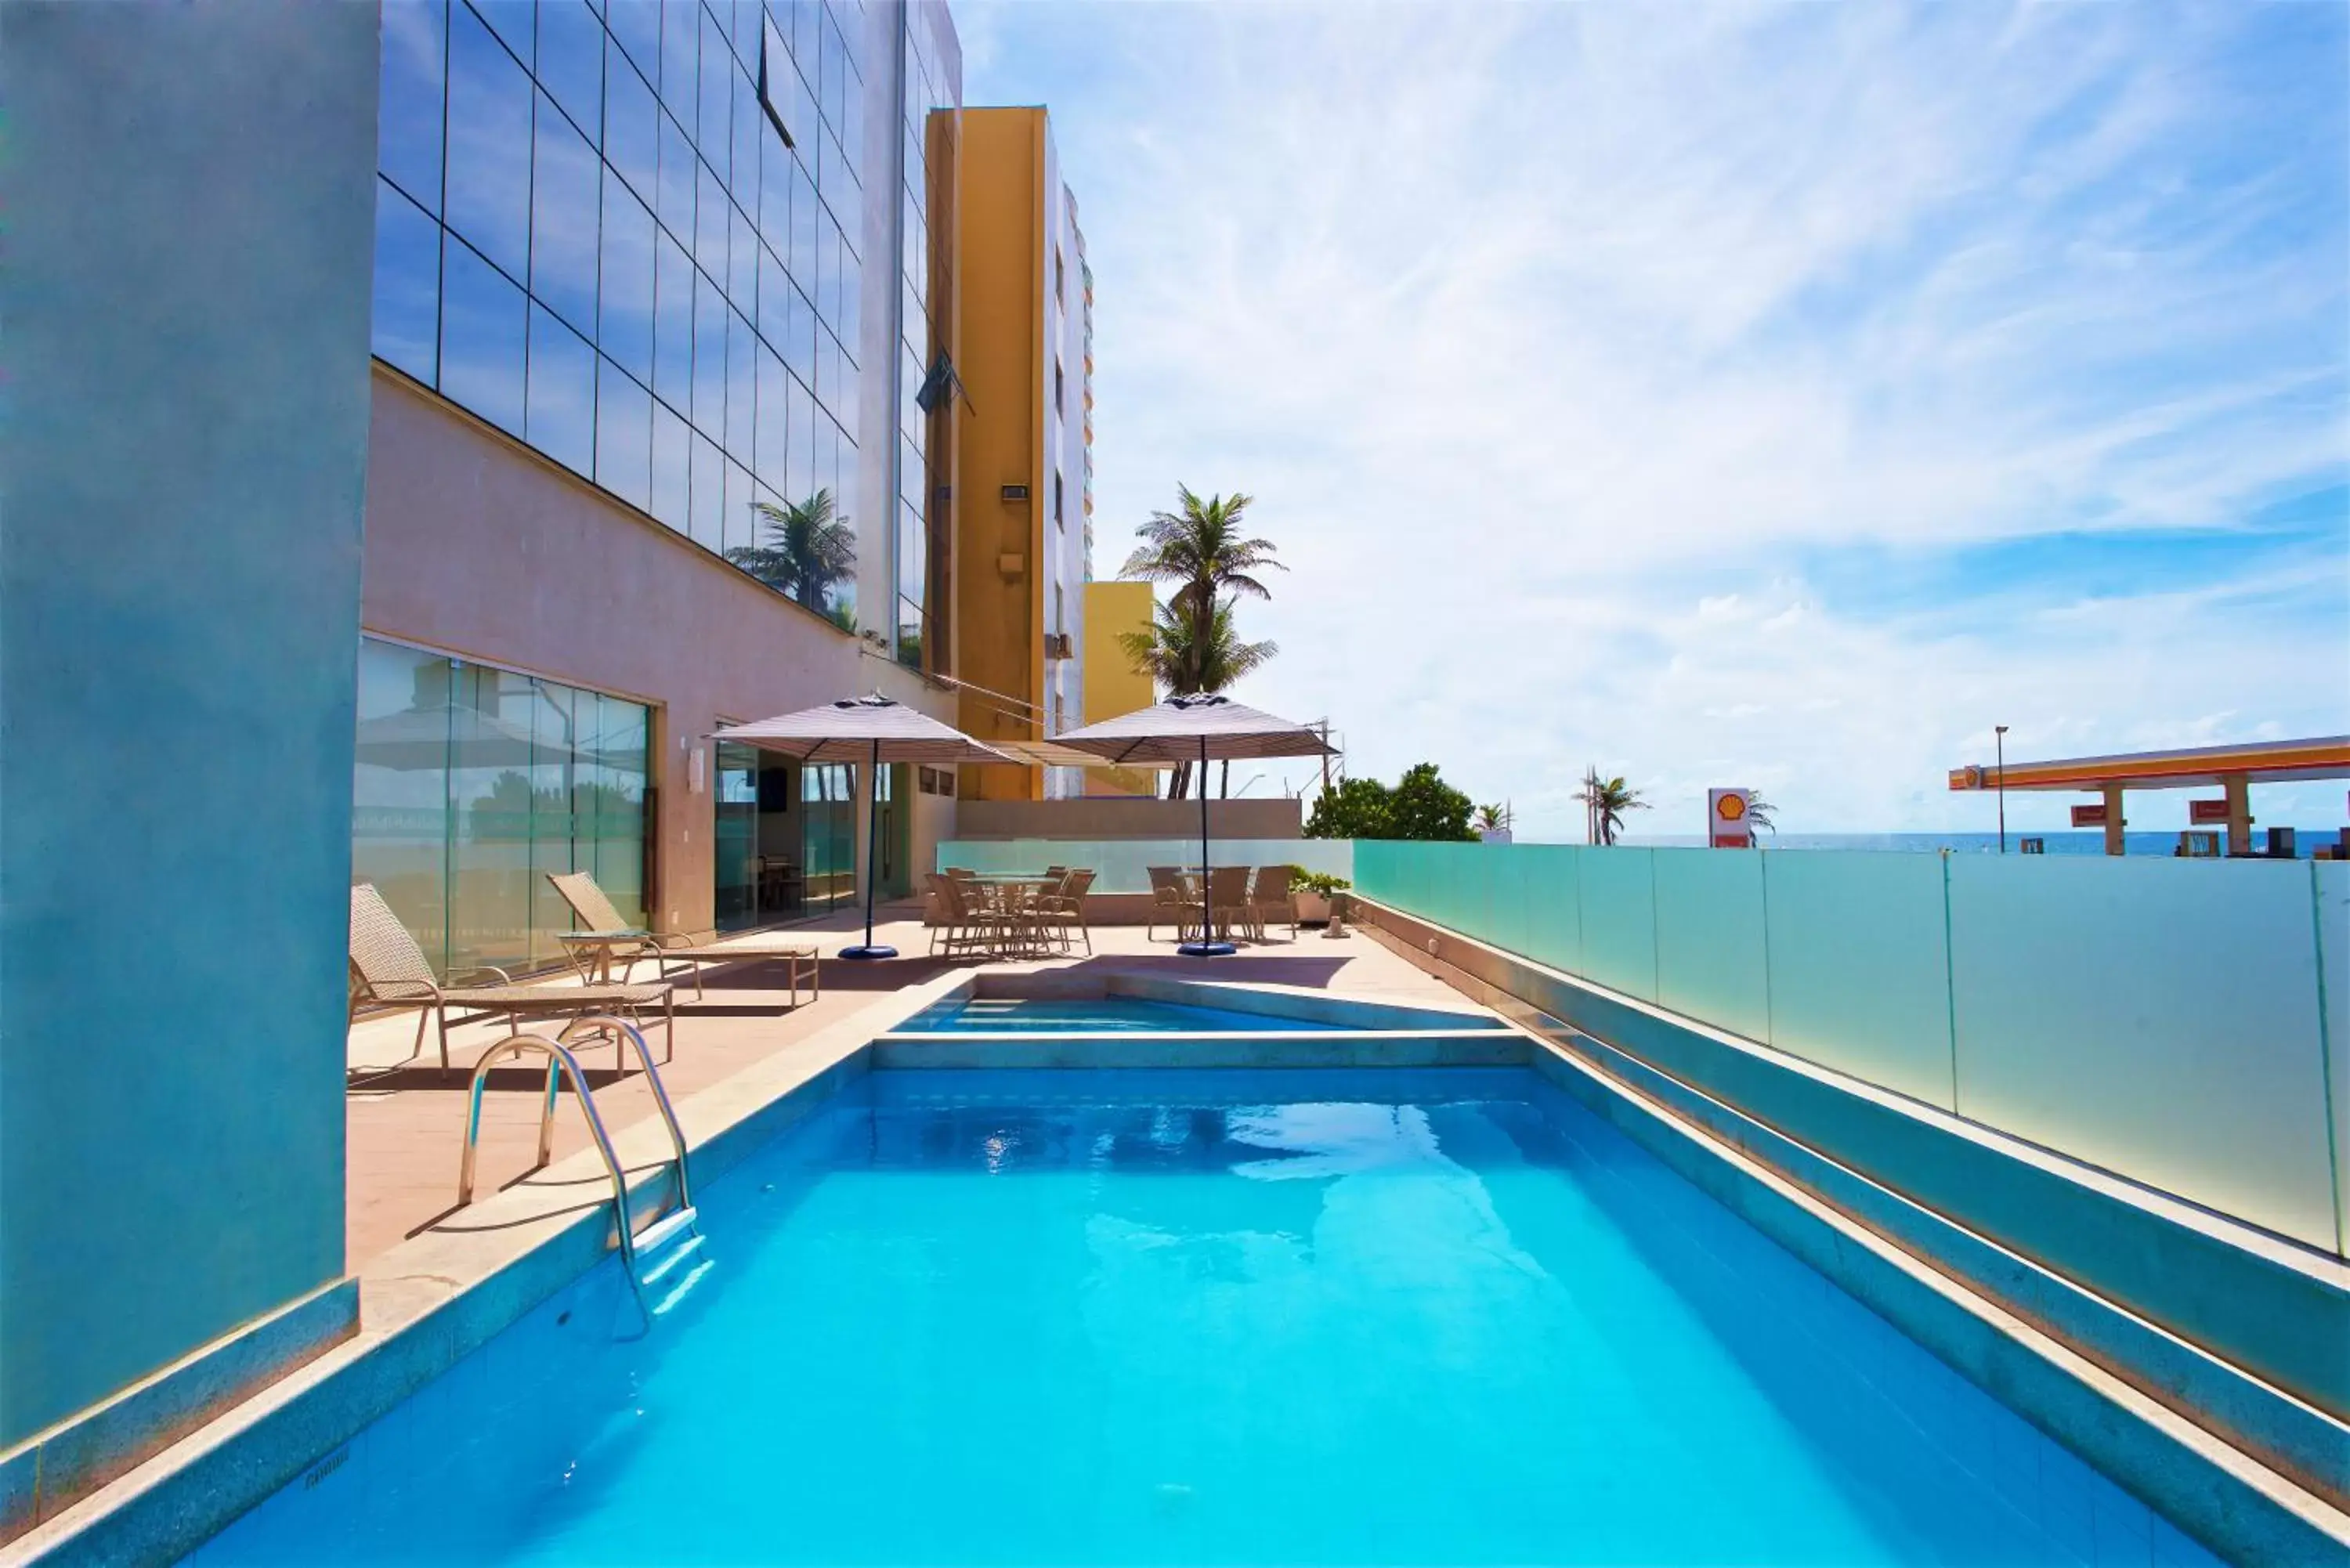 Swimming Pool in Marano Hotel